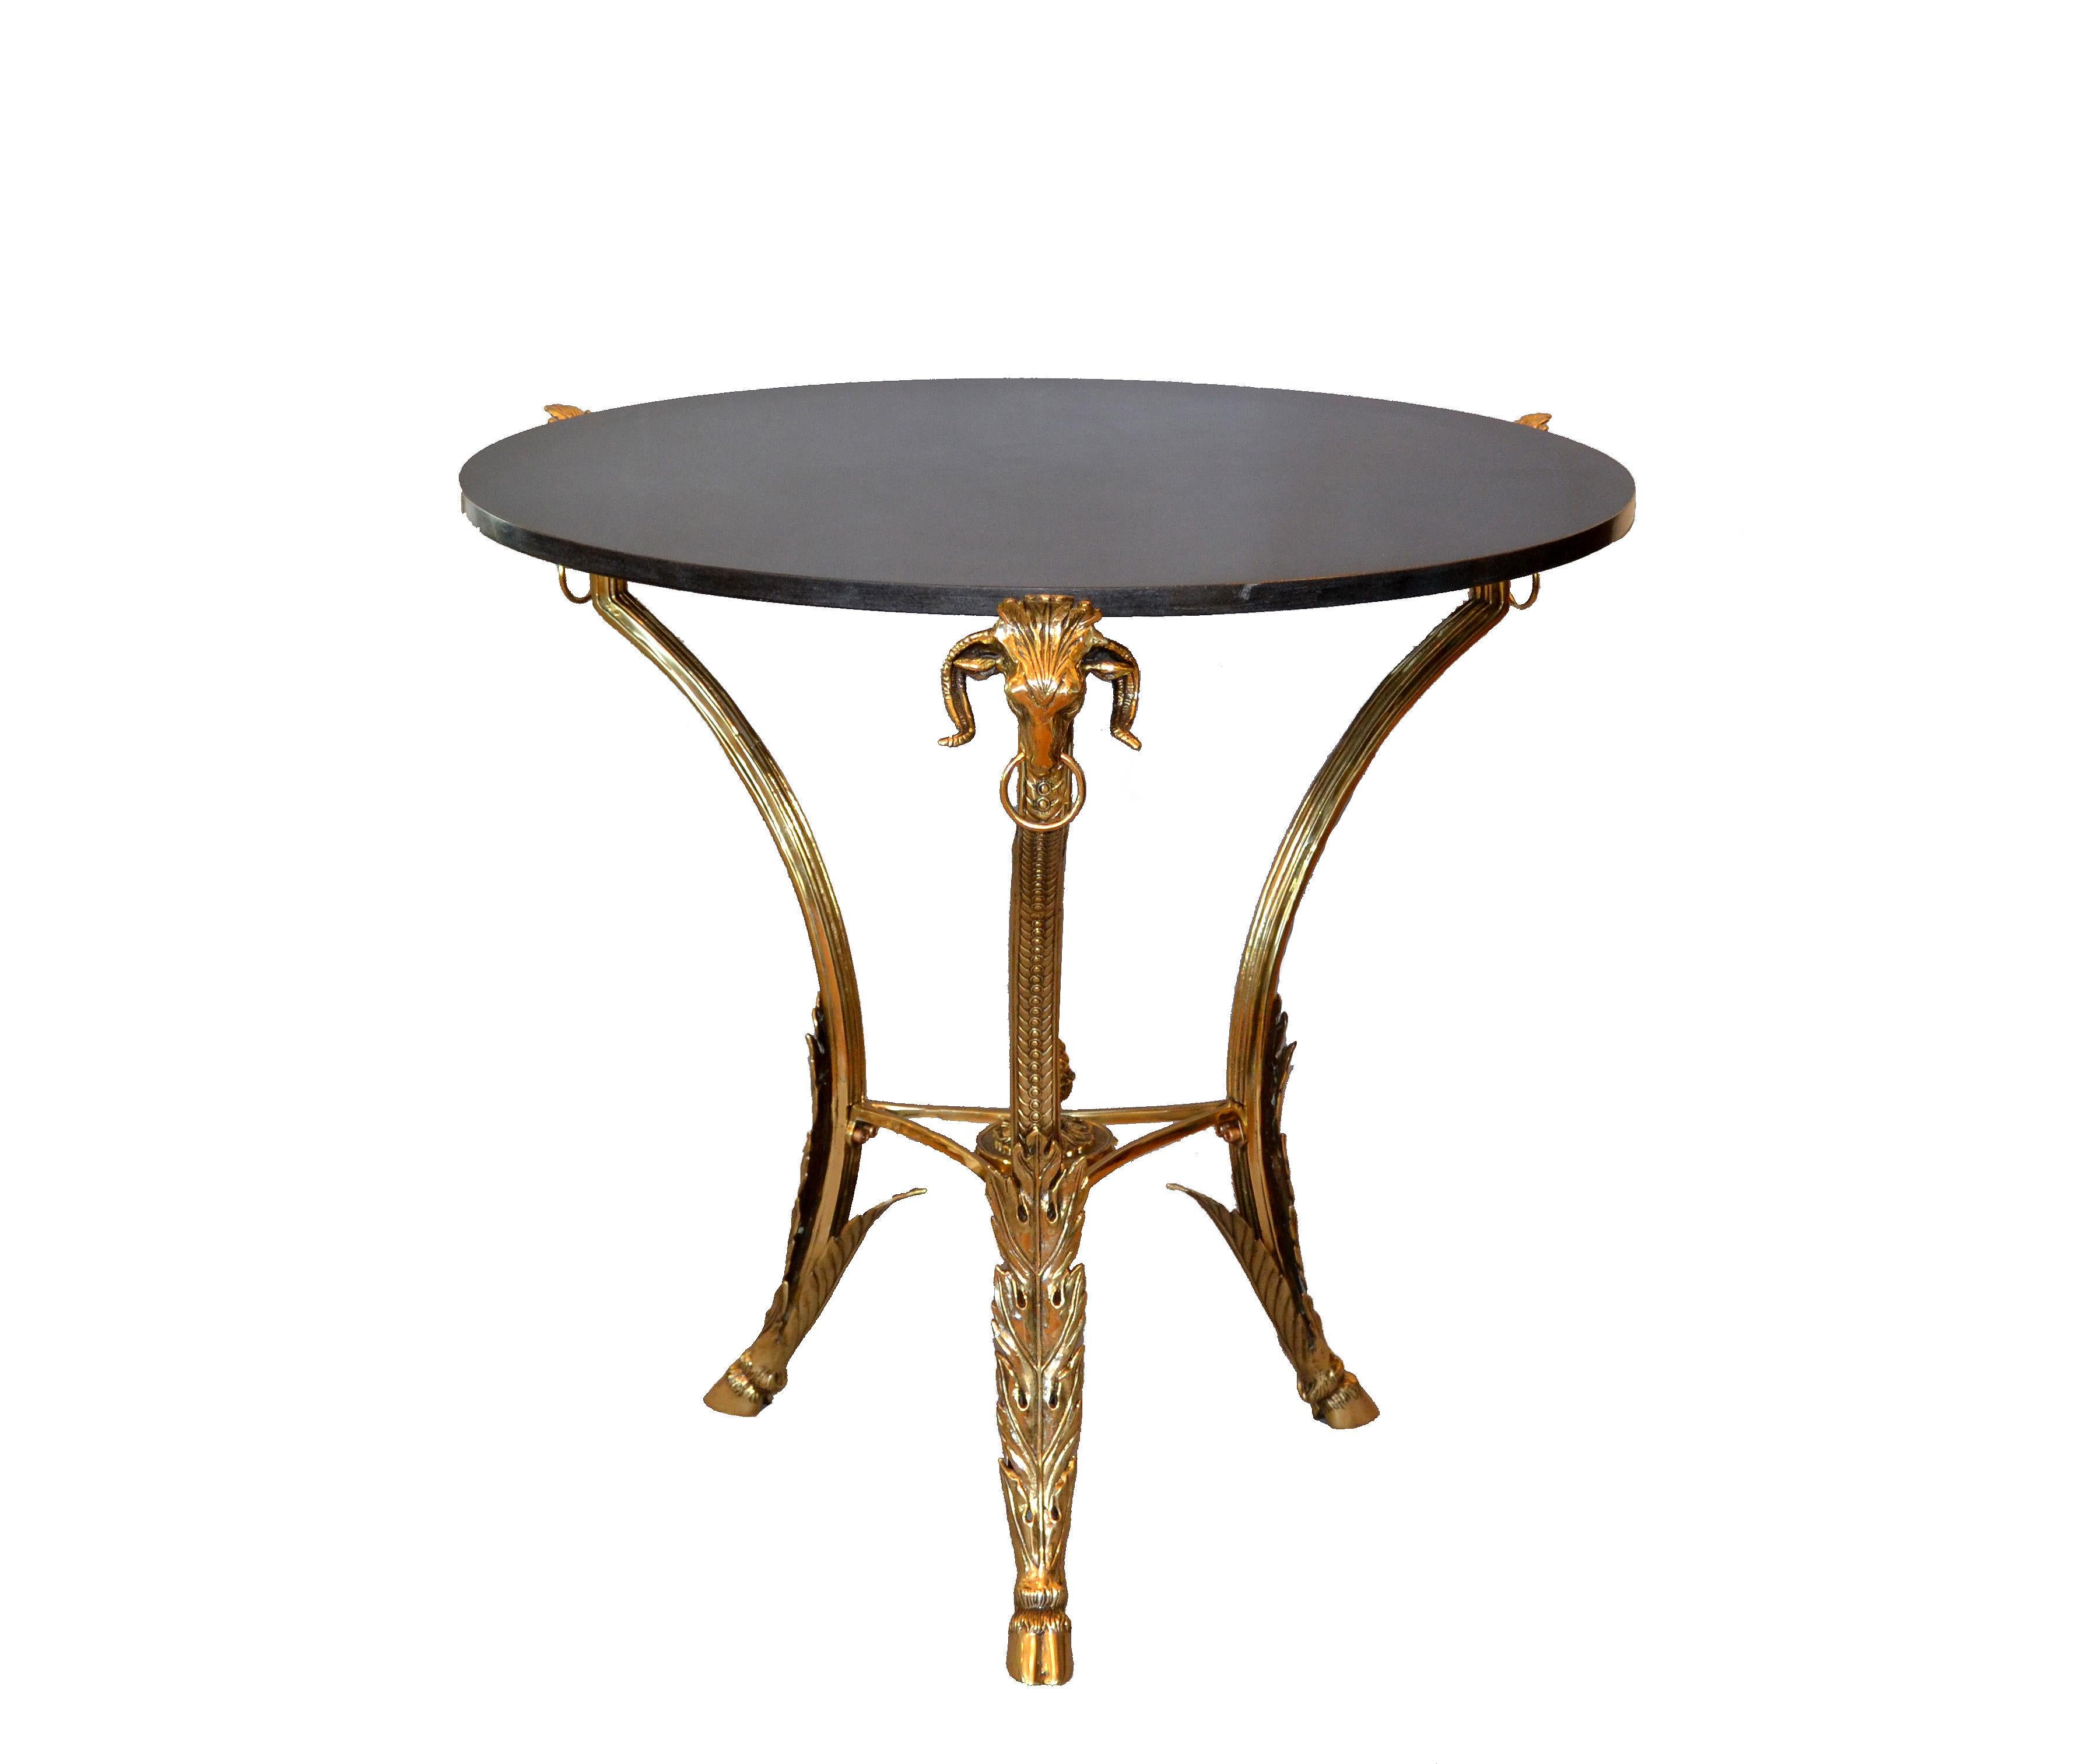 Präsentiert wird eine runde Französisch Bronze Gueridon Style Couchtisch oder Cocktail-Tisch mit einer schweren Granitplatte in dunkelgrauer Farbe.
Dieser Tisch hat eine Vielzahl von Bronzedetails wie die Rams-Köpfe, Klauenfüße und